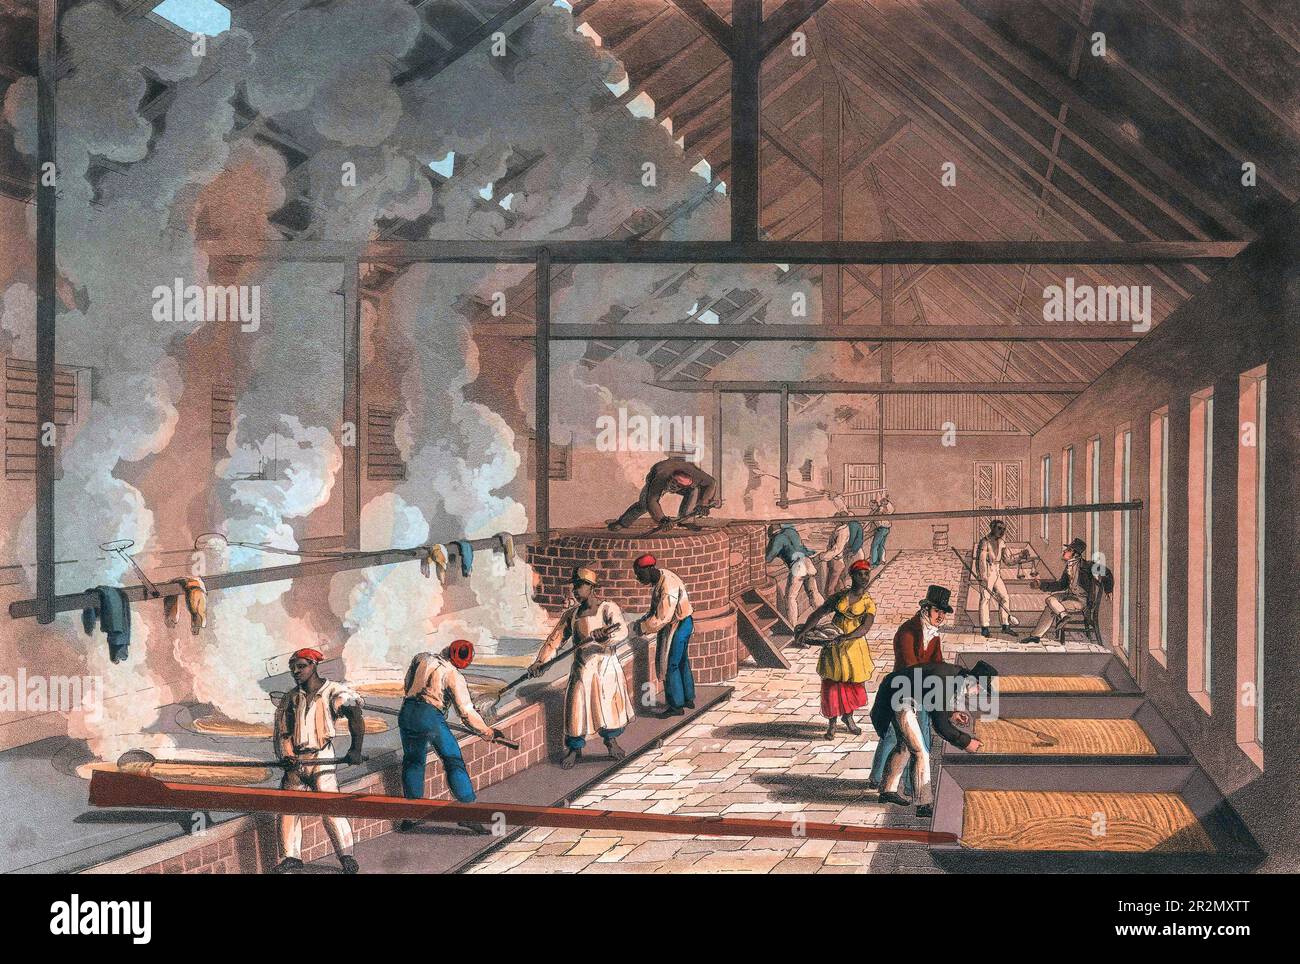 Verdampfung von Zuckerrohrsaft in Kristalle durch Sklavenarbeiter in Antigua. Nach einer Illustration in William Clarks zehn Ansichten der Insel Antigua, veröffentlicht 1823. Stockfoto